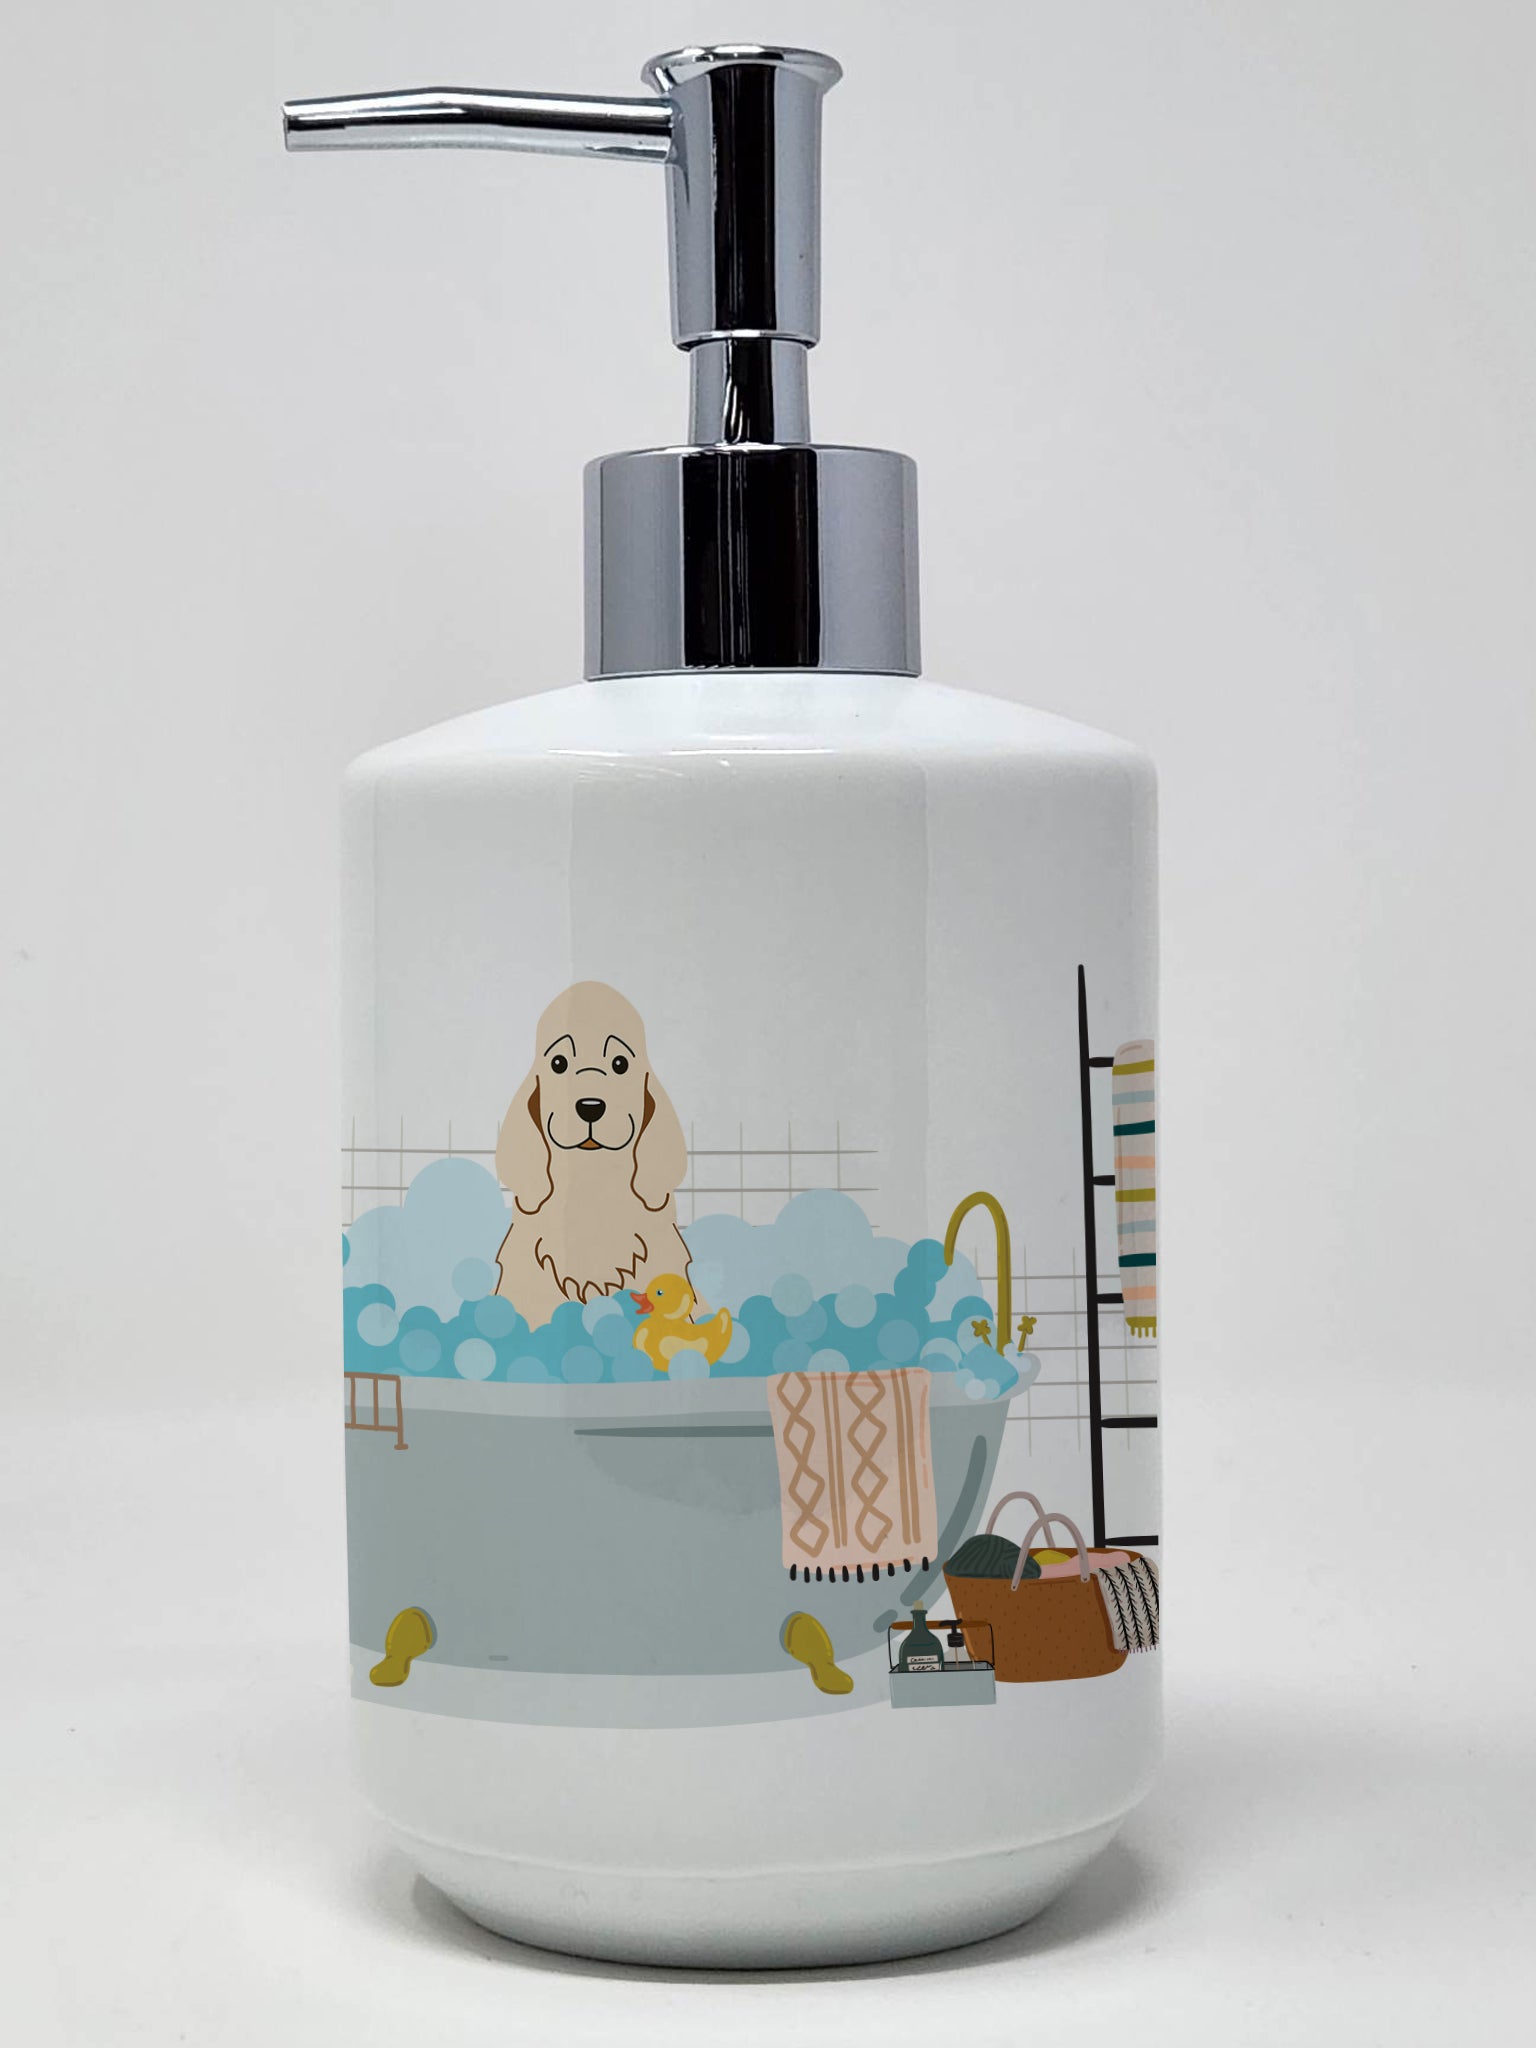 Buy this Buff Cocker Spaniel in Bathtub Ceramic Soap Dispenser